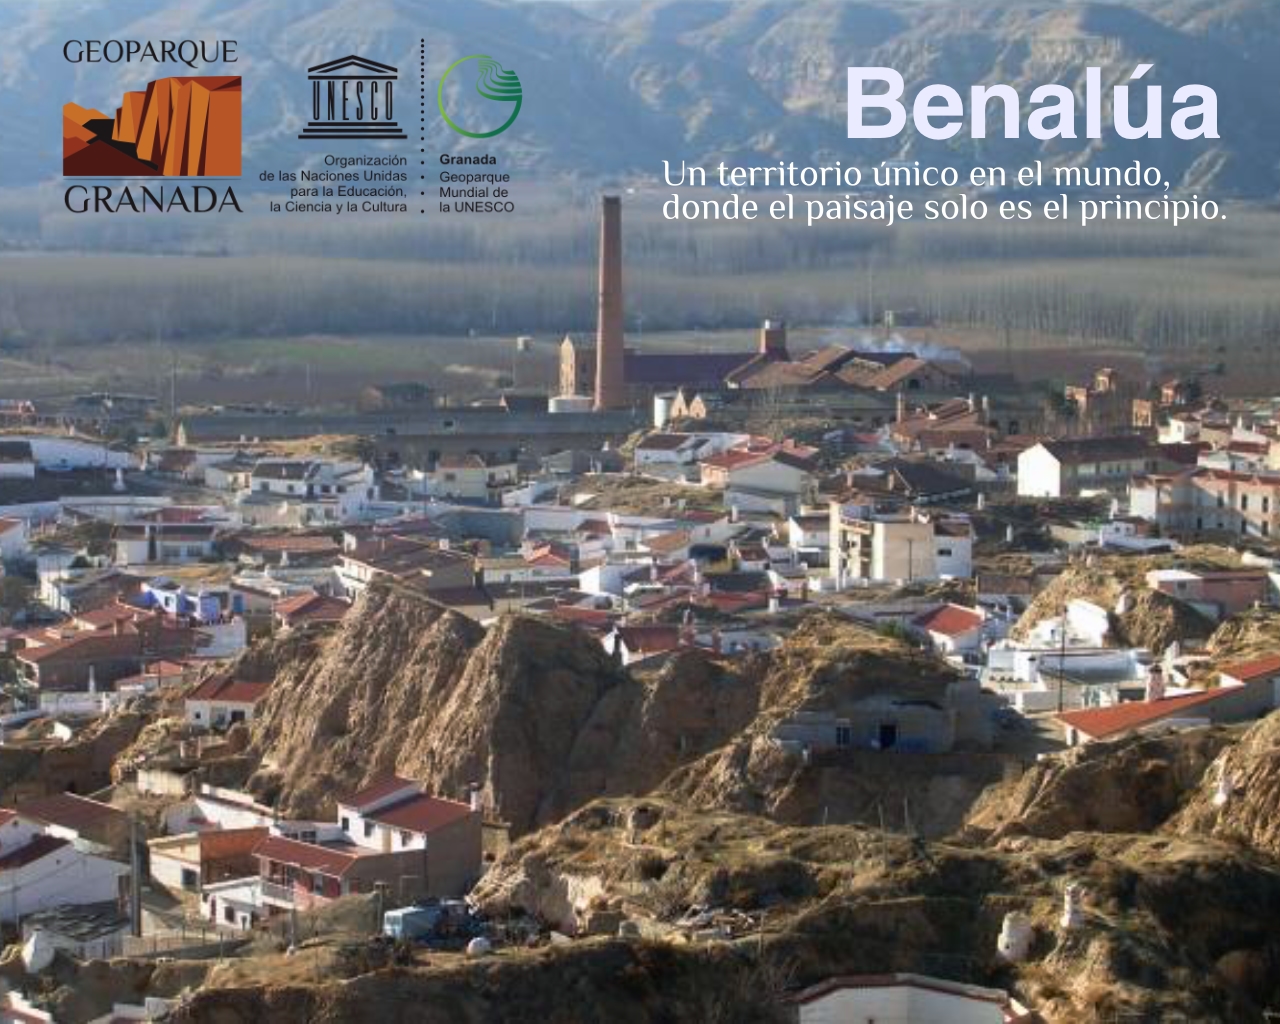 EXPO ITINERANTE BENALUA - Exposición sobre el Geoparque, en BENALÚA del 23 de febrero al 8 de marzo. - Geoparque de Granada